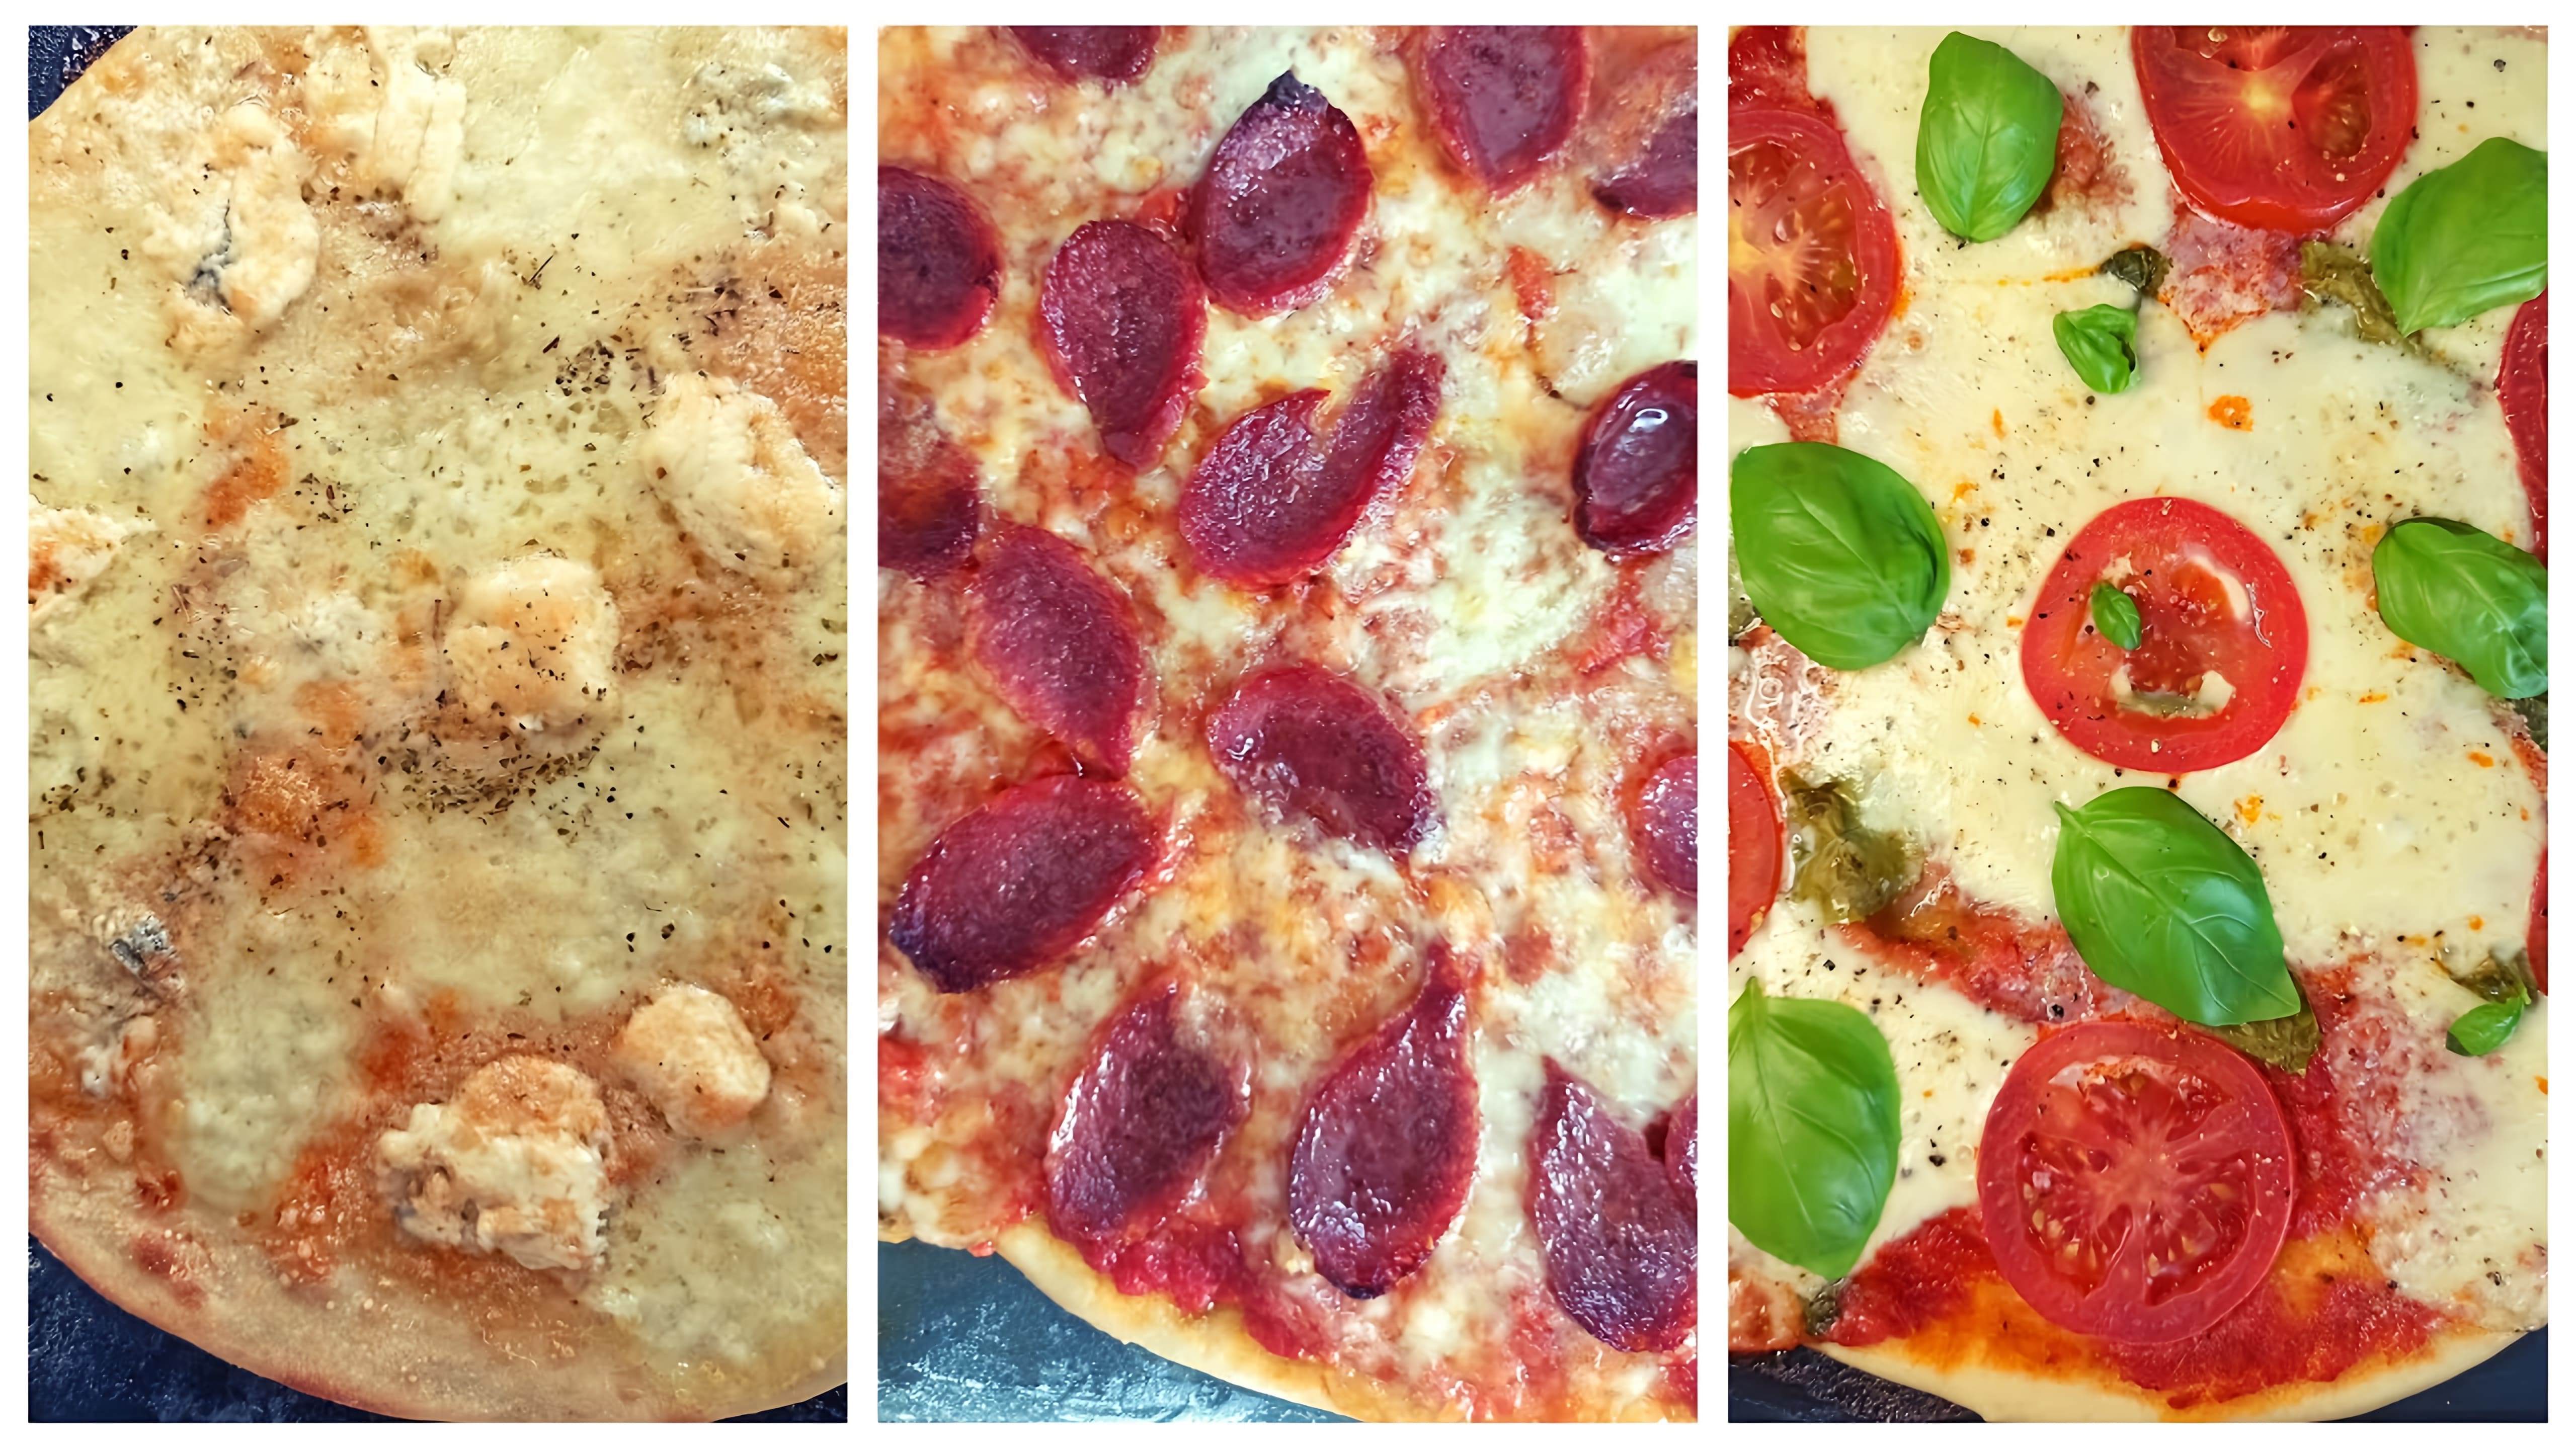 В этом видео представлены три рецепта пиццы: пицца Маргарита, пицца Пепперони и пицца 4 сыра